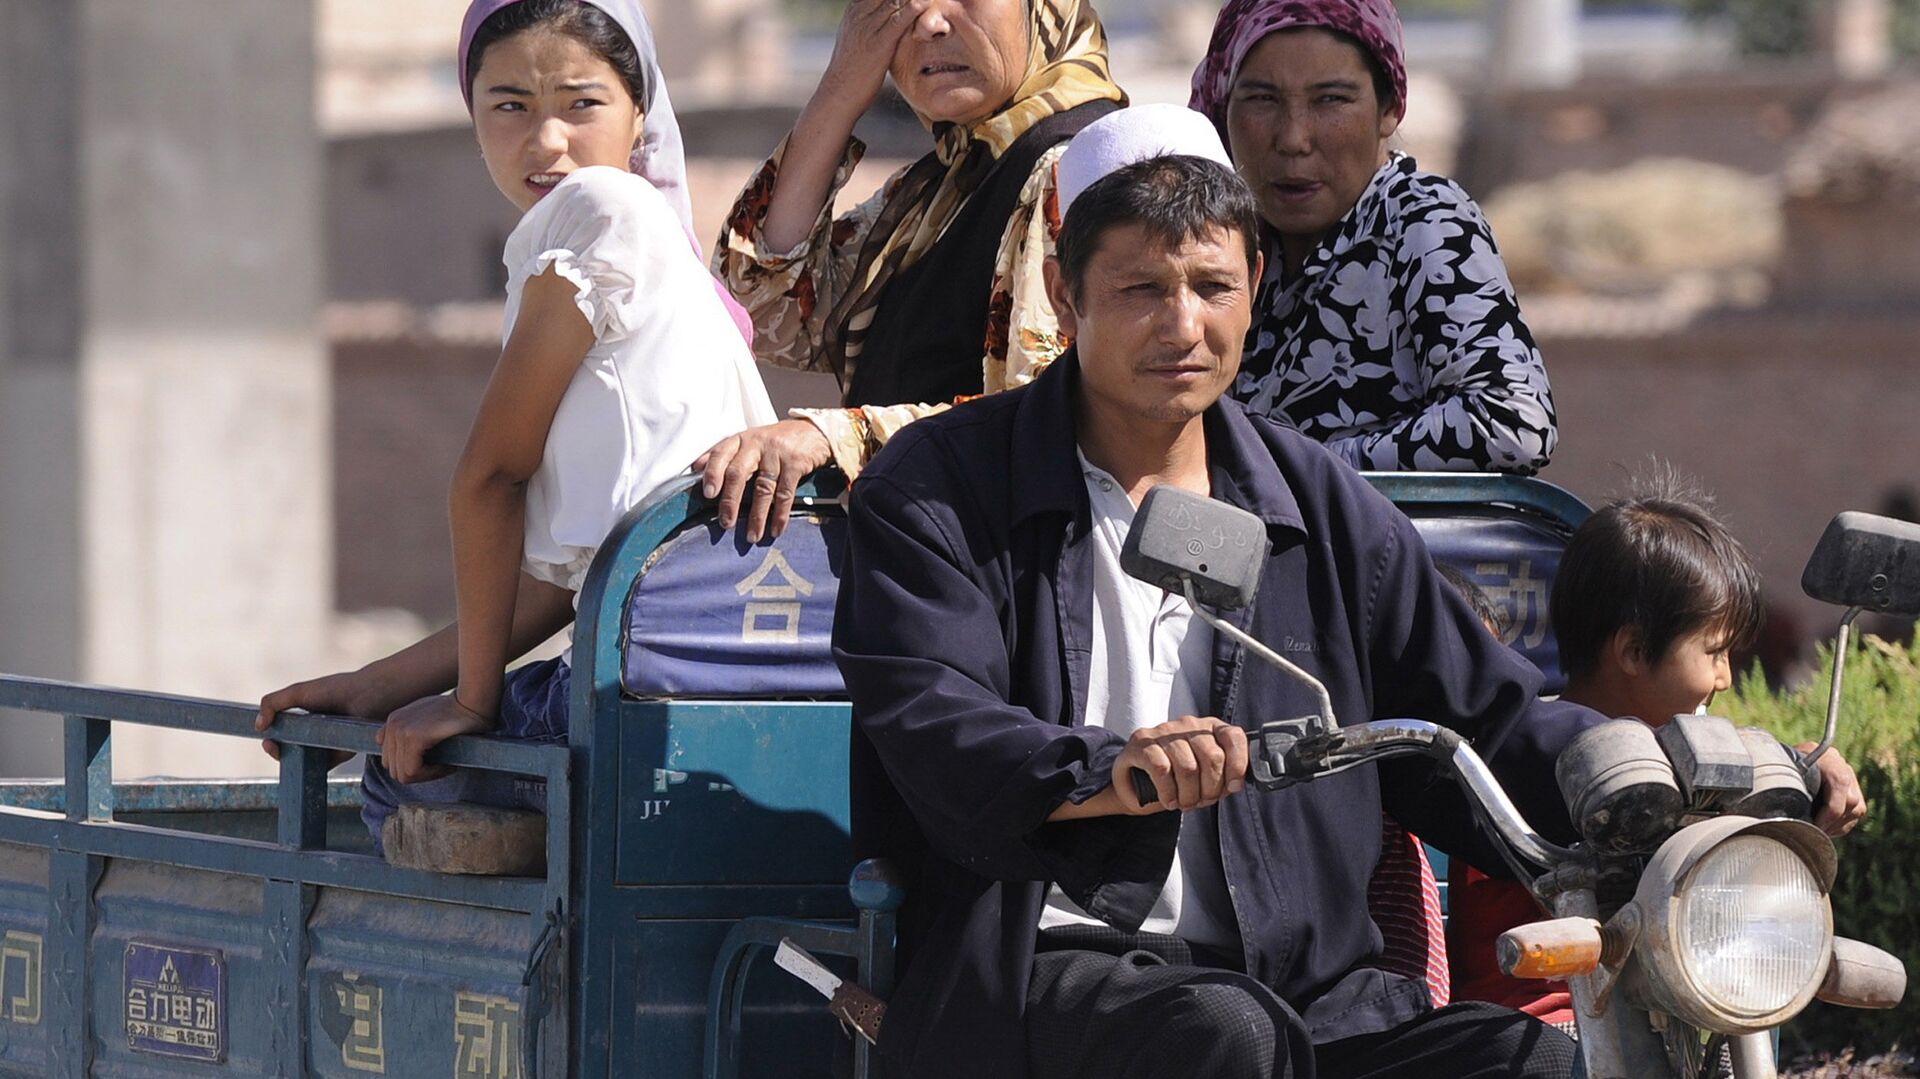 أفراد من أقلية مسلمة في غرب الصين في منطقة شينجيانغ المسلمة بشكل رئيسي في 30 يوليو 2008 - سبوتنيك عربي, 1920, 09.03.2021